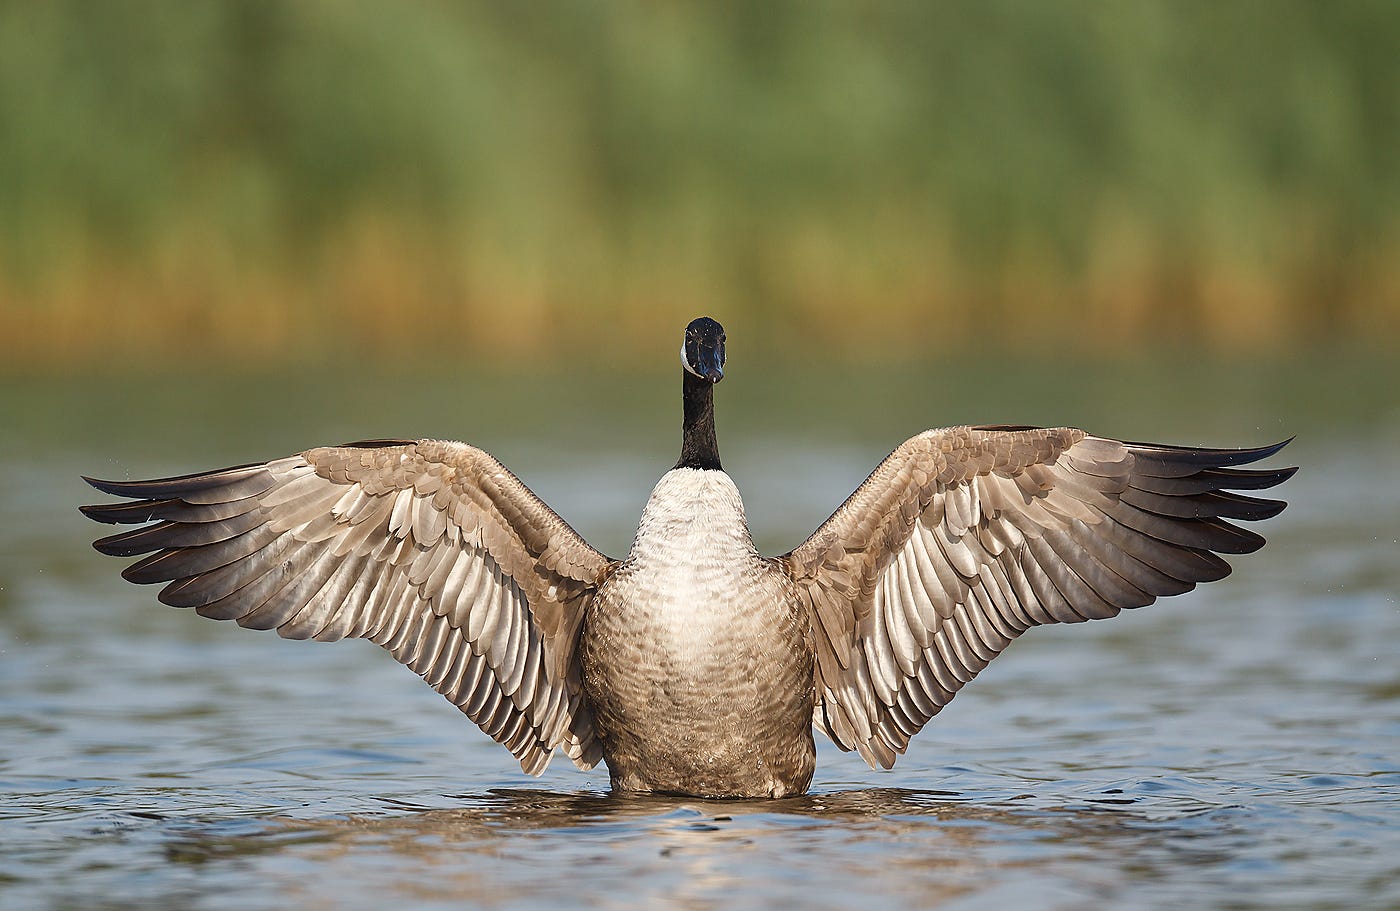 The Canada Goose | A Wild Bird | The Wildlife